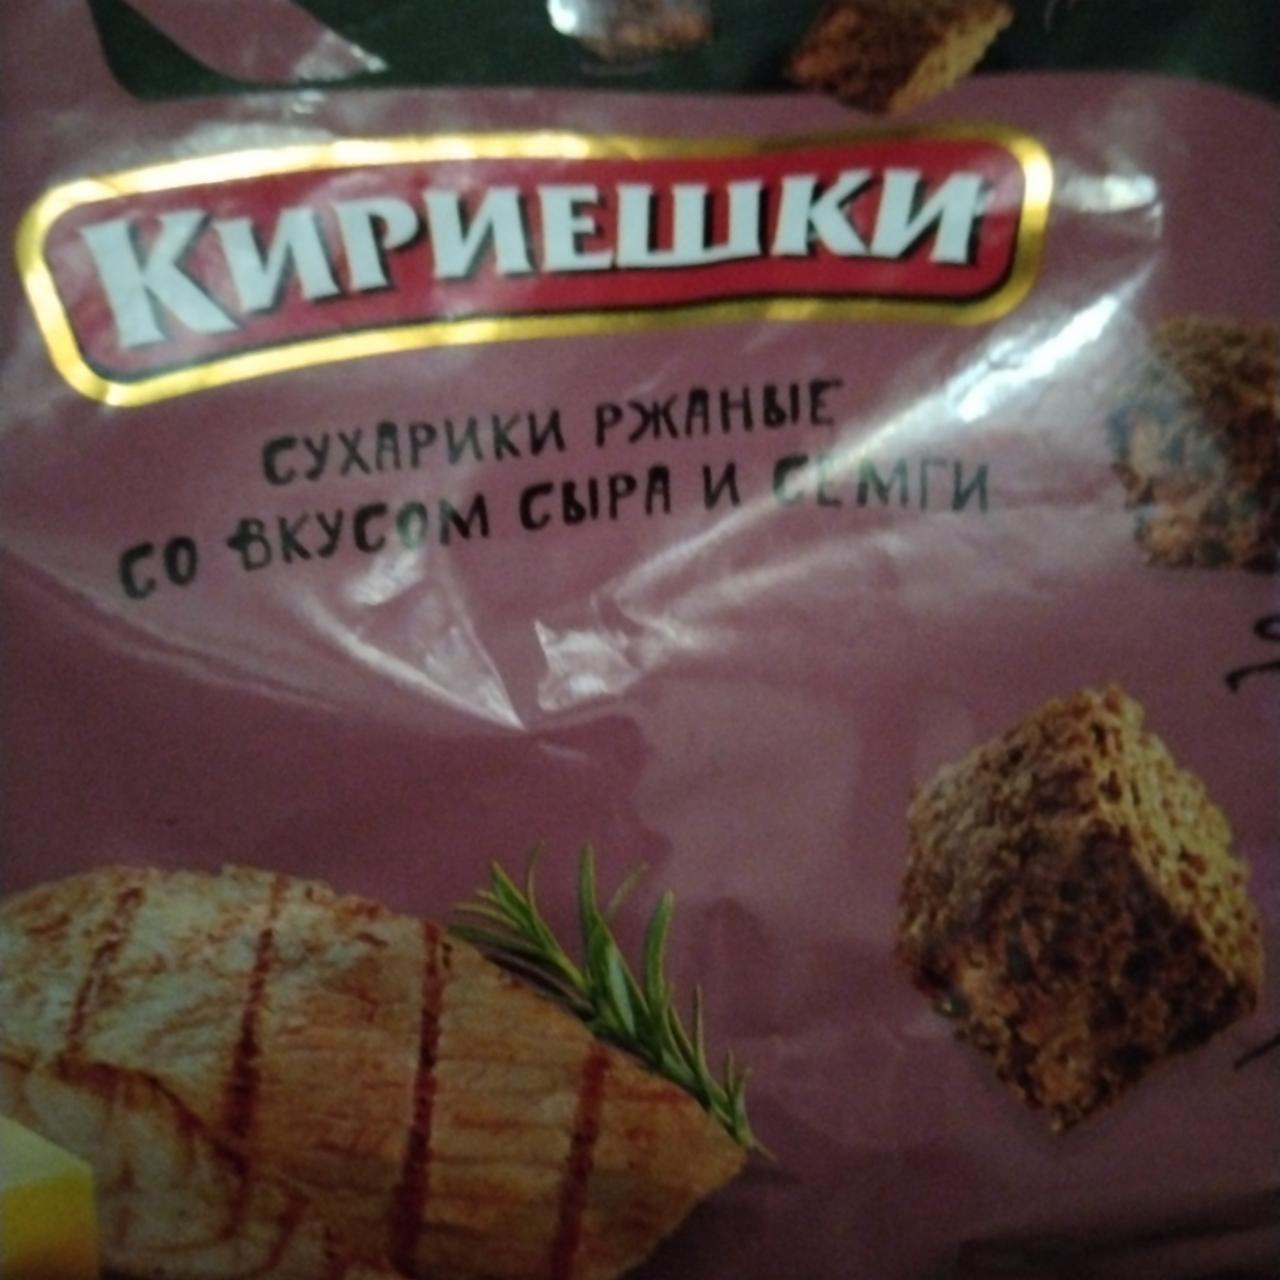 Фото - Сухарики ржаные со вкусом сыра и семги Кириешки